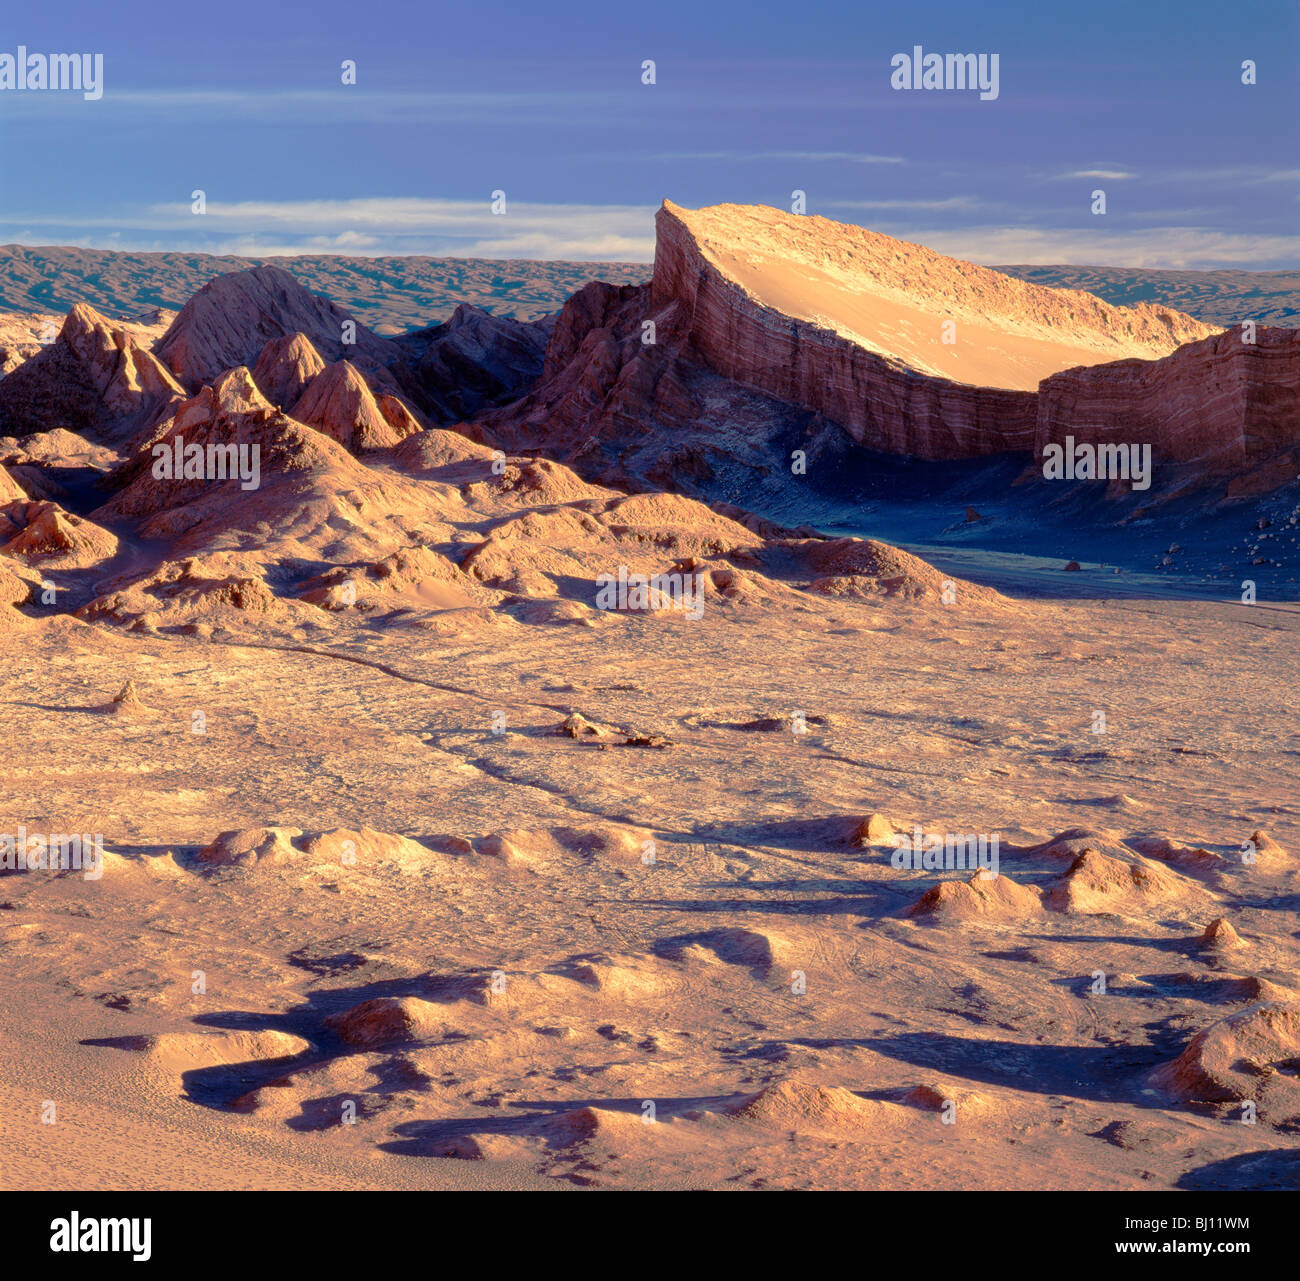 Tal des Mondes, Atacama-Wüste. Gips, Ton & Salz der Wüste Formationen, südöstlich von Calama, Nordchile Stockfoto